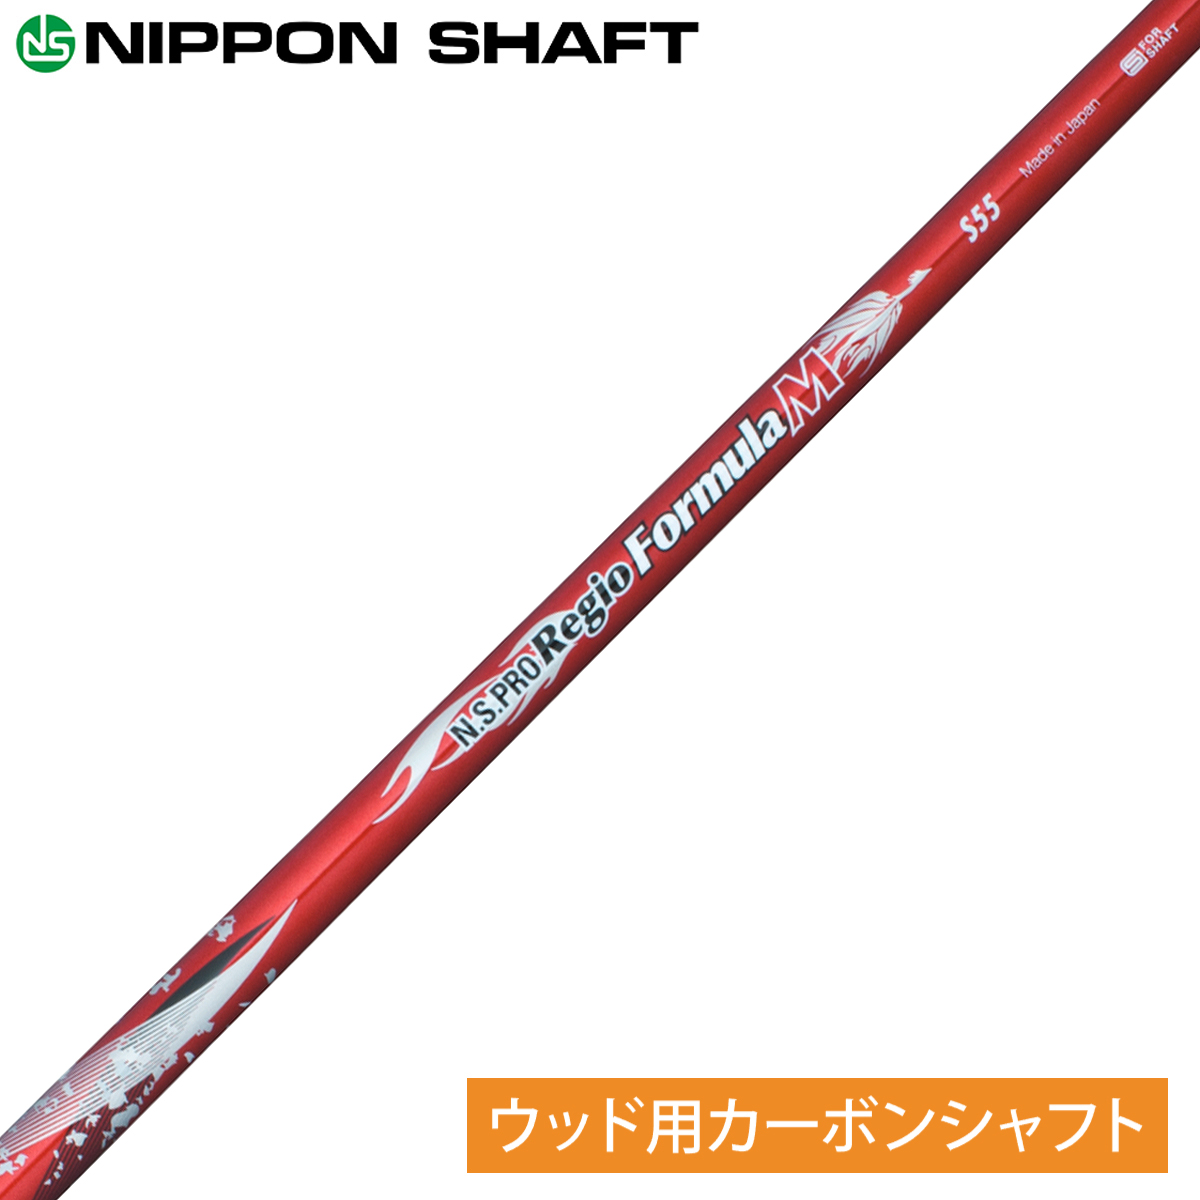 【楽天市場】NIPPON SHAFT 日本シャフト日本正規品 N.S.PRO 